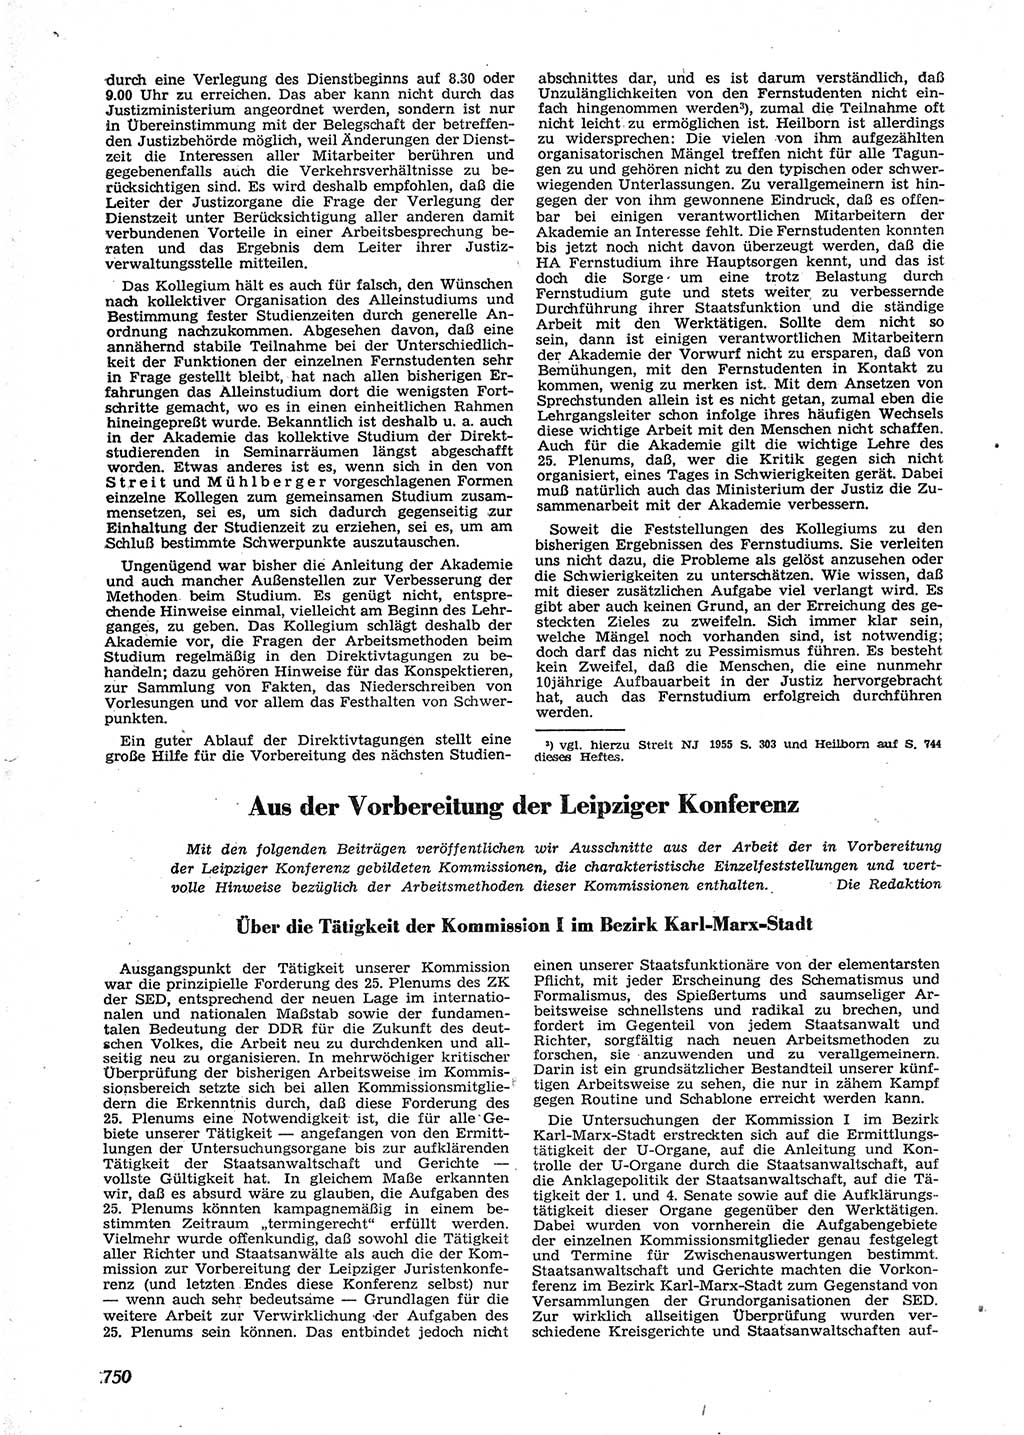 Neue Justiz (NJ), Zeitschrift für Recht und Rechtswissenschaft [Deutsche Demokratische Republik (DDR)], 9. Jahrgang 1955, Seite 750 (NJ DDR 1955, S. 750)